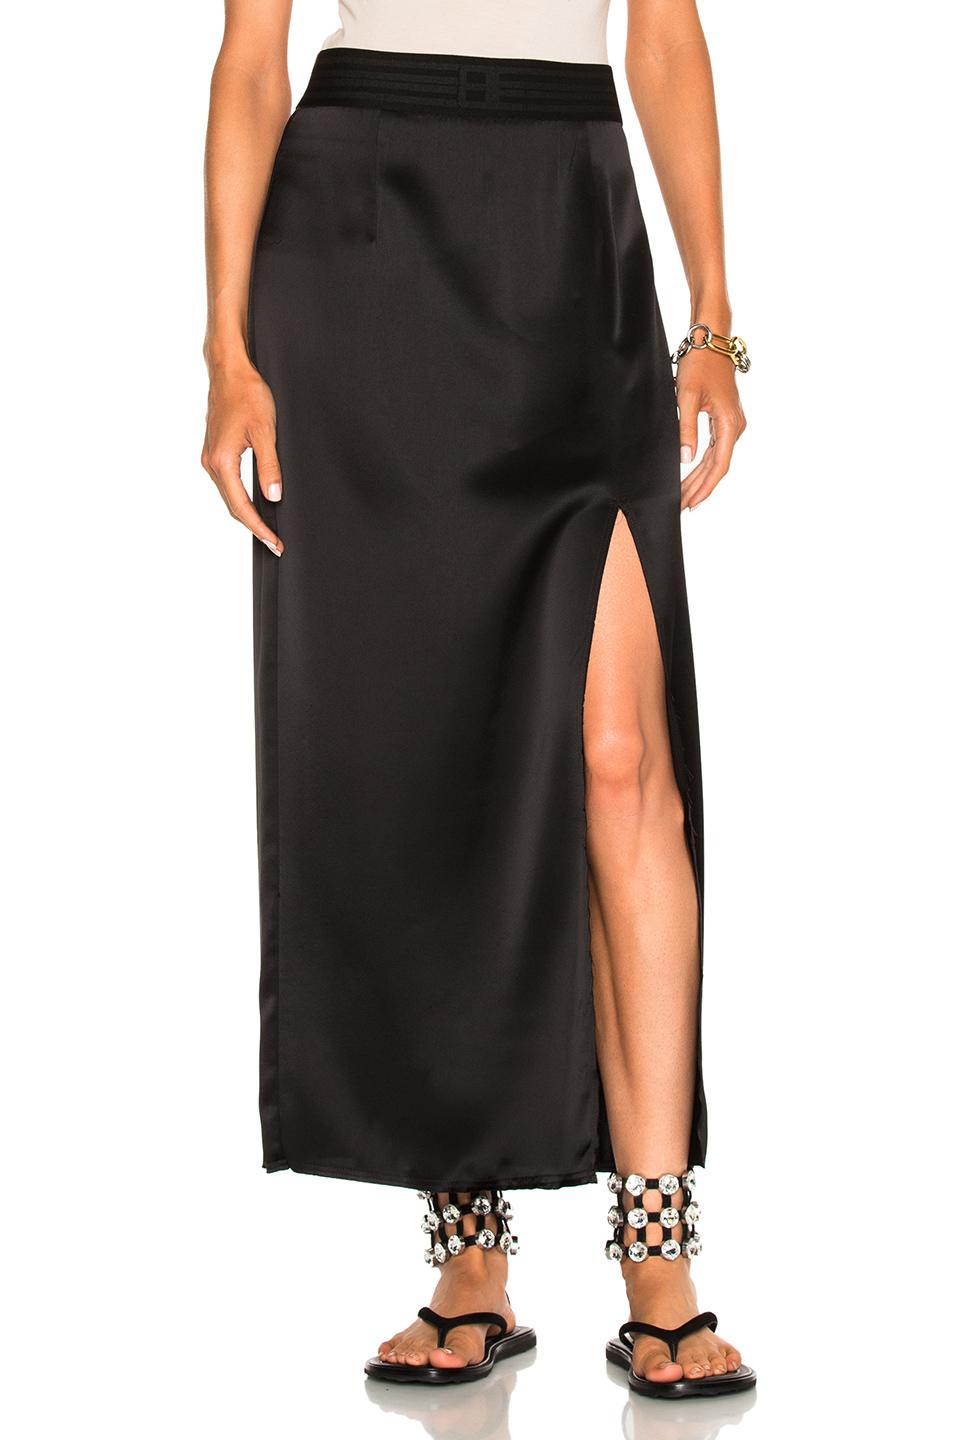 Baja East Satin Back Crepe Skirt In Black | ModeSens